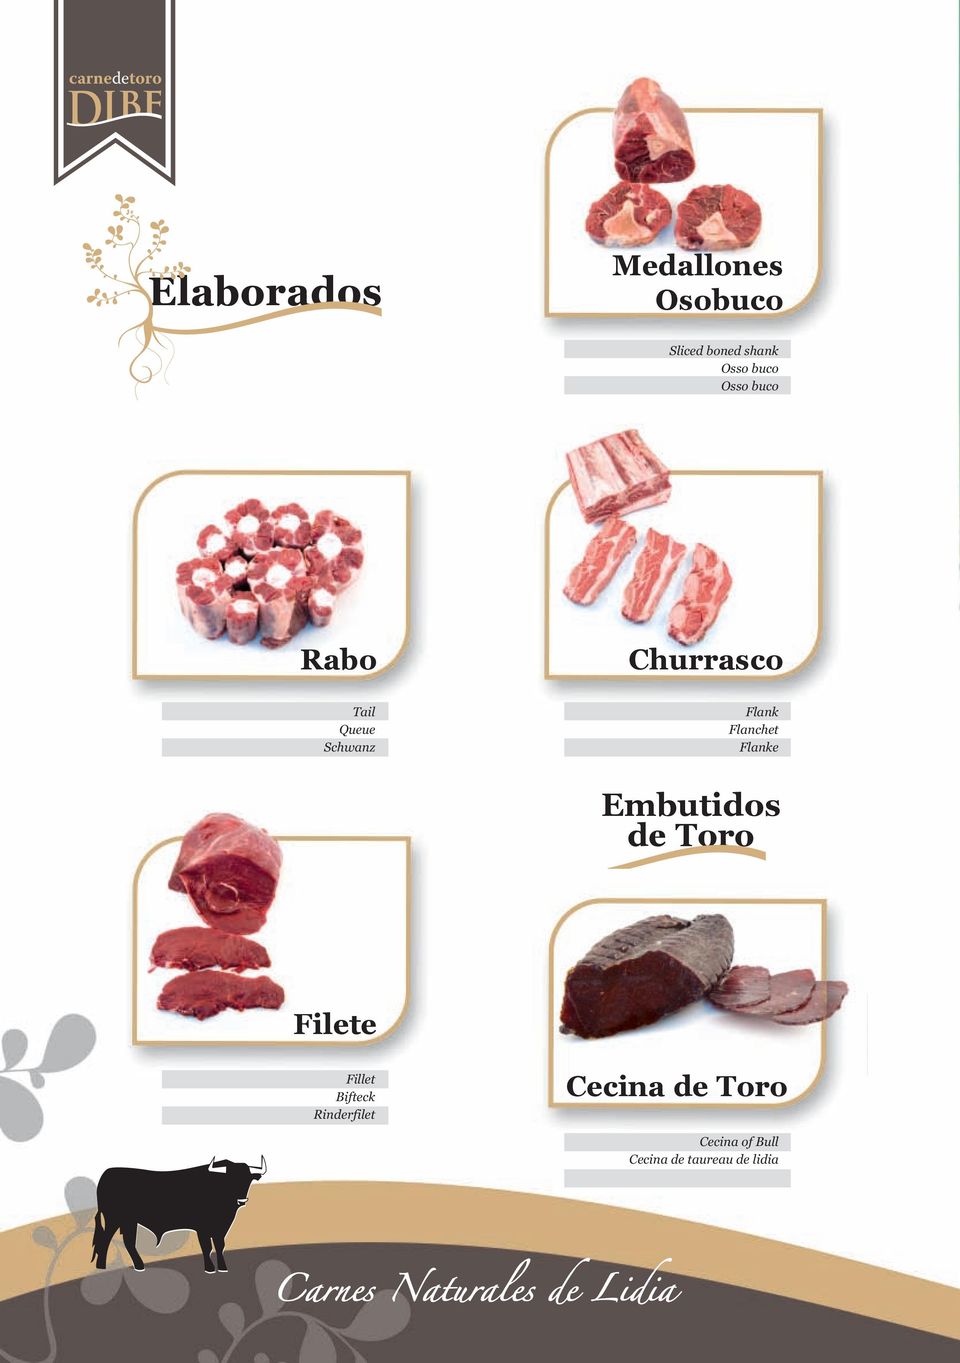 Flanke Embutidos de Toro Filete Fillet Bifteck Rinderfilet Cecina